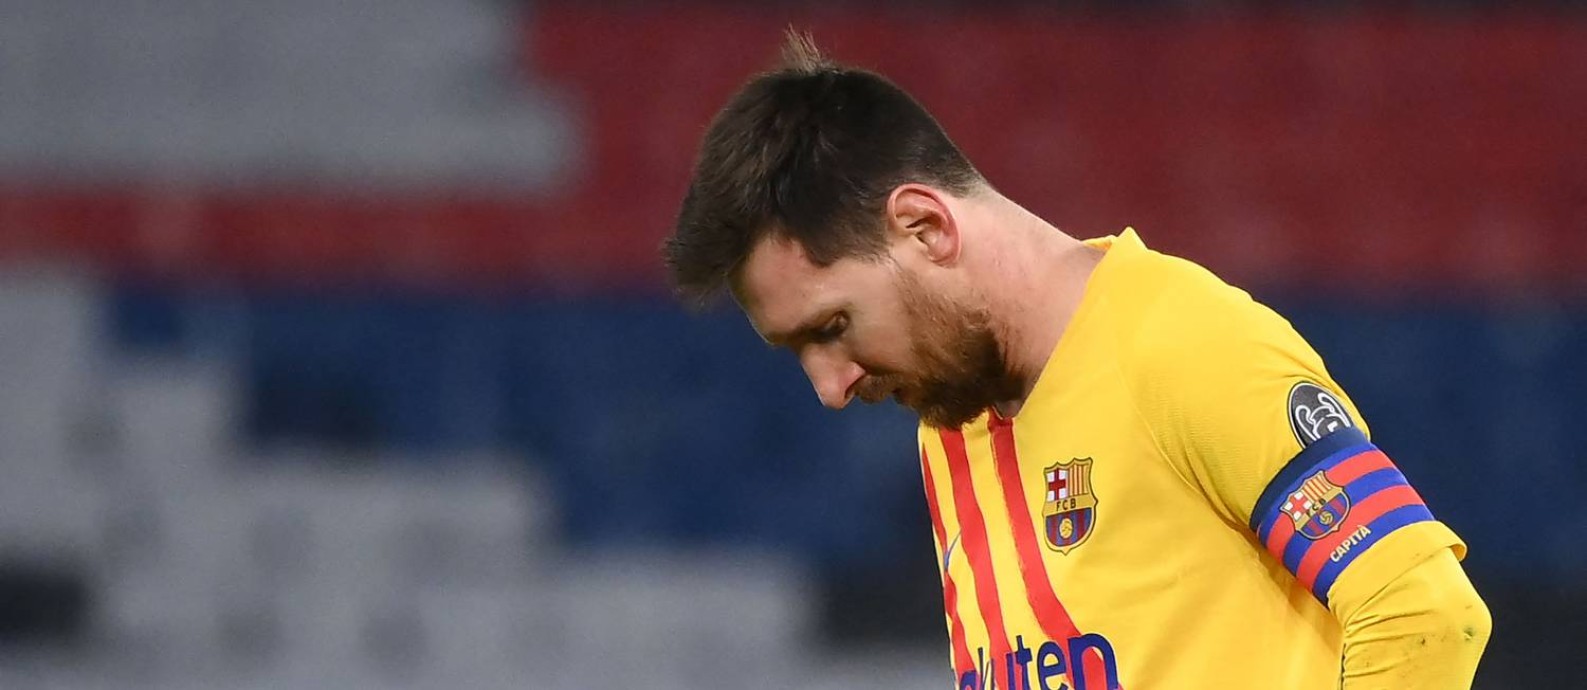 Messi no empate do Barcelona com o PSG Foto: FRANCK FIFE / AFP